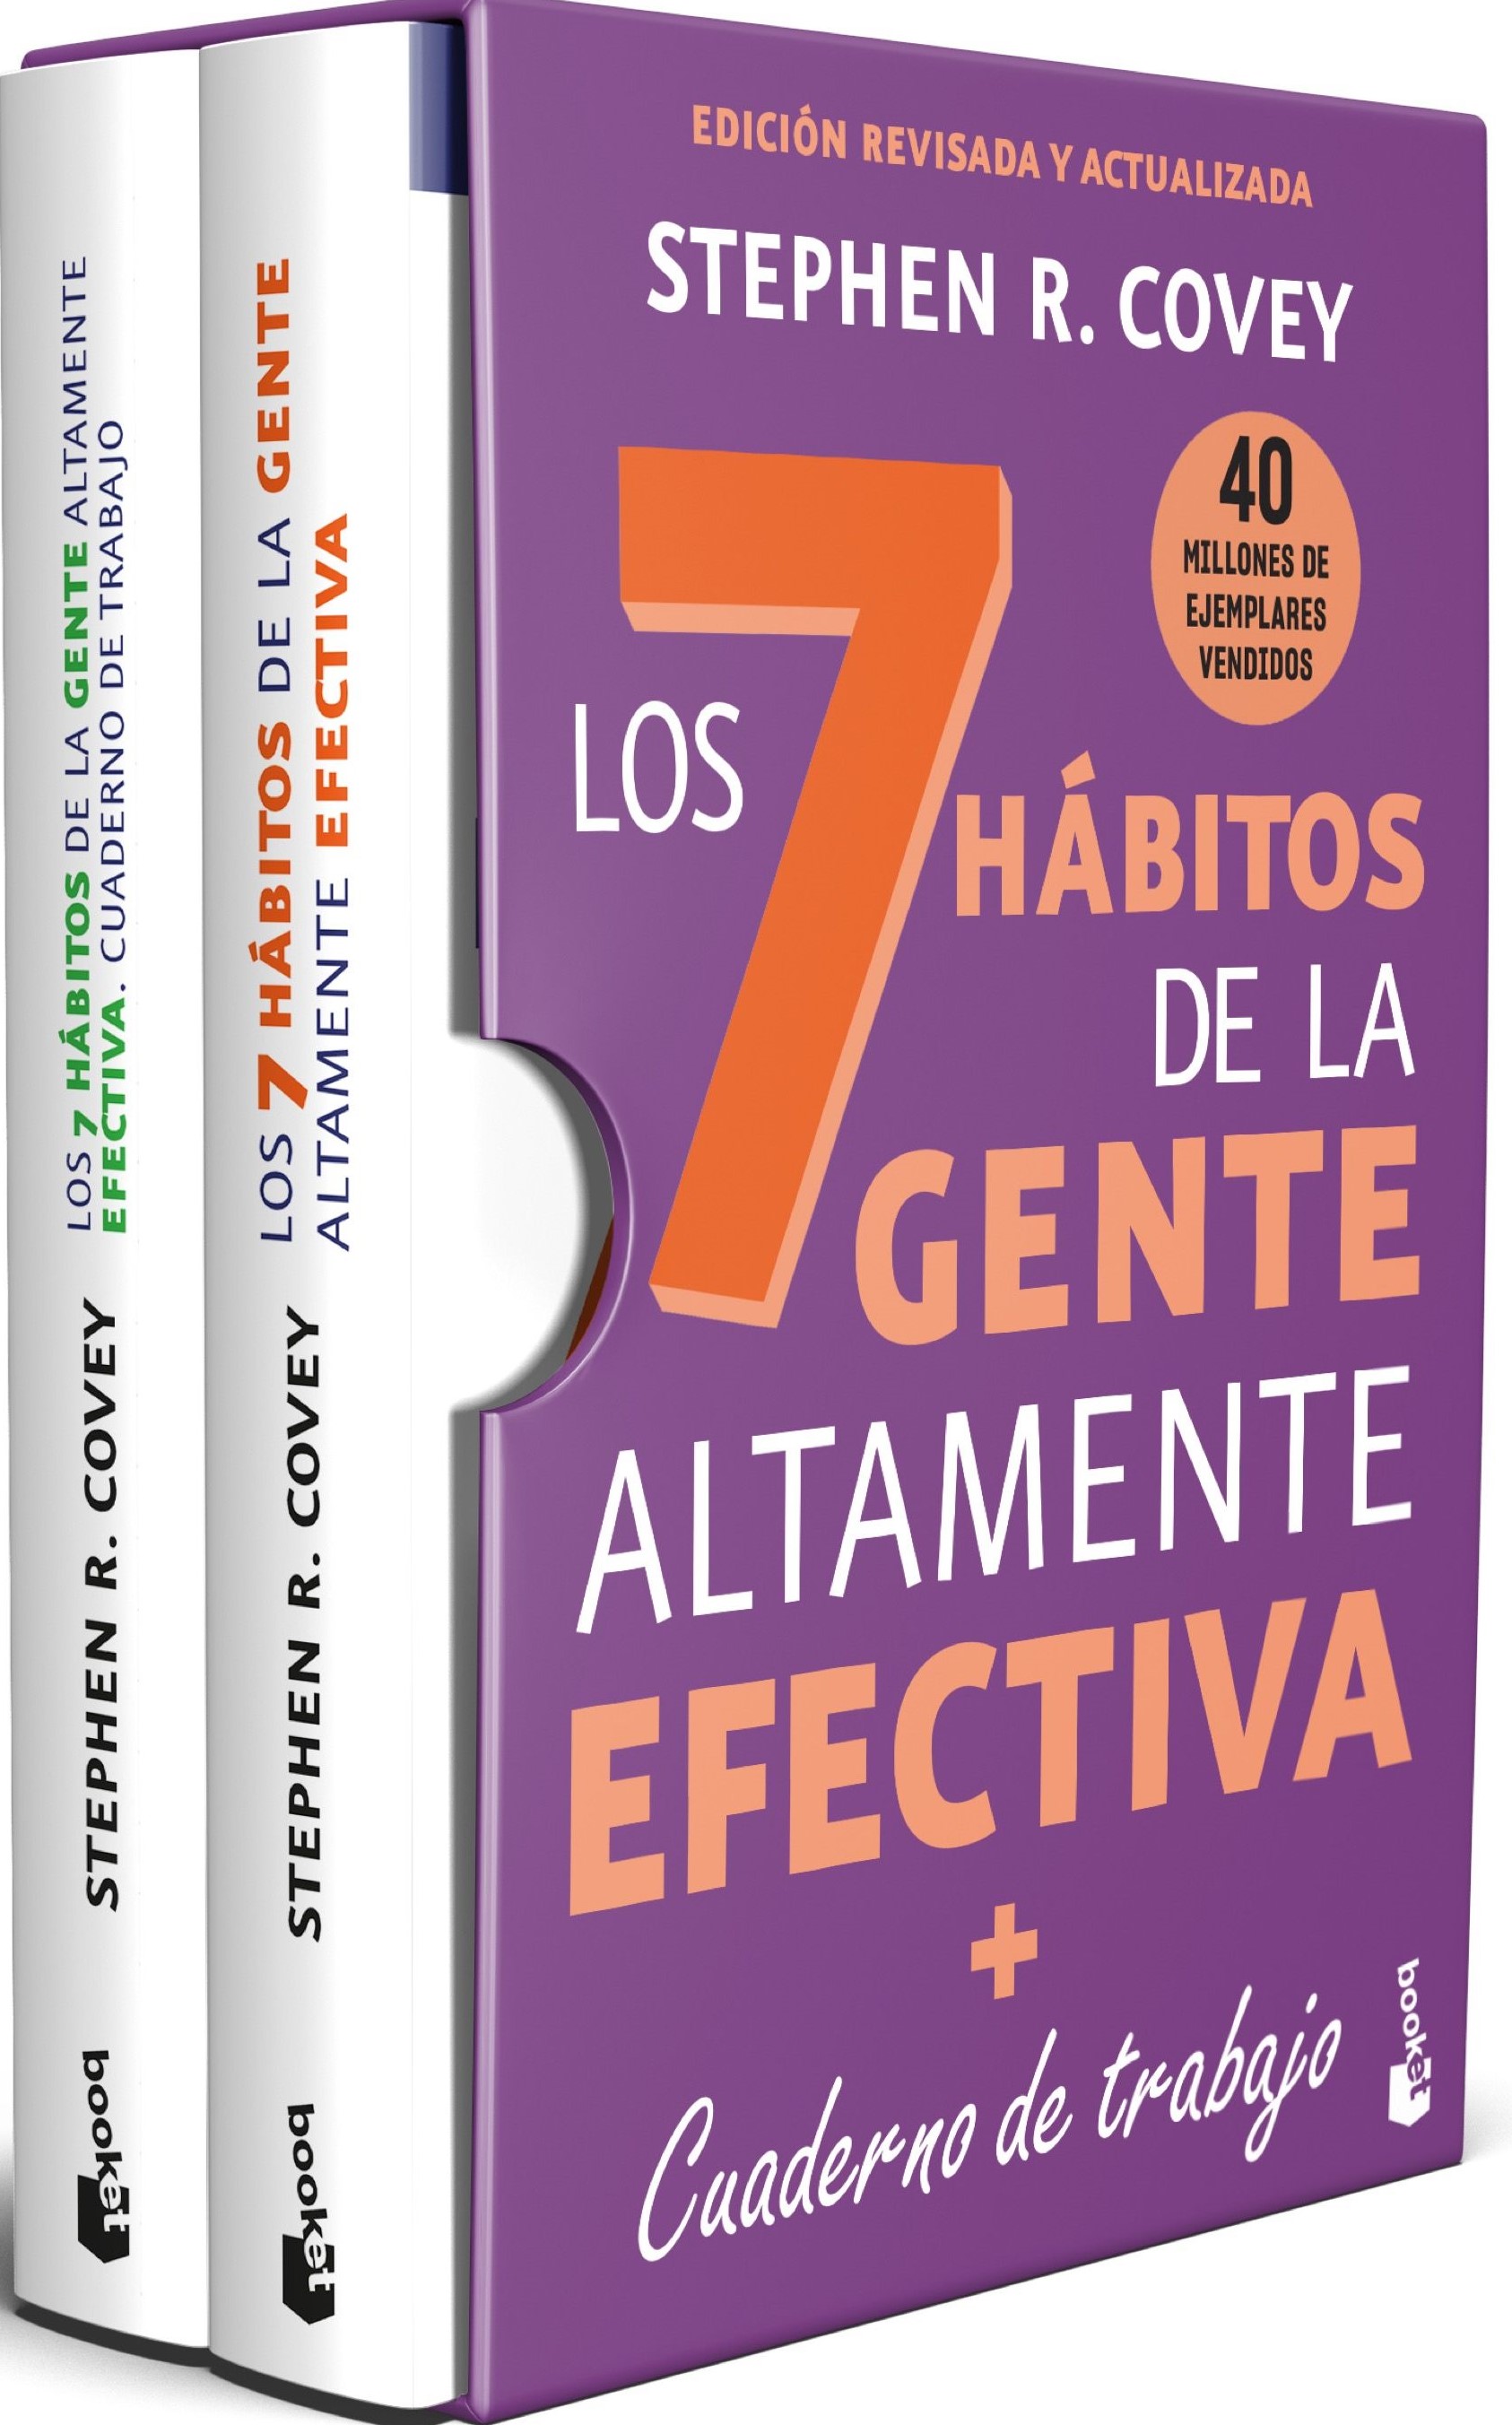 Los 7 hábitos de la gente altamente efectiva + Cuaderno de trabajo